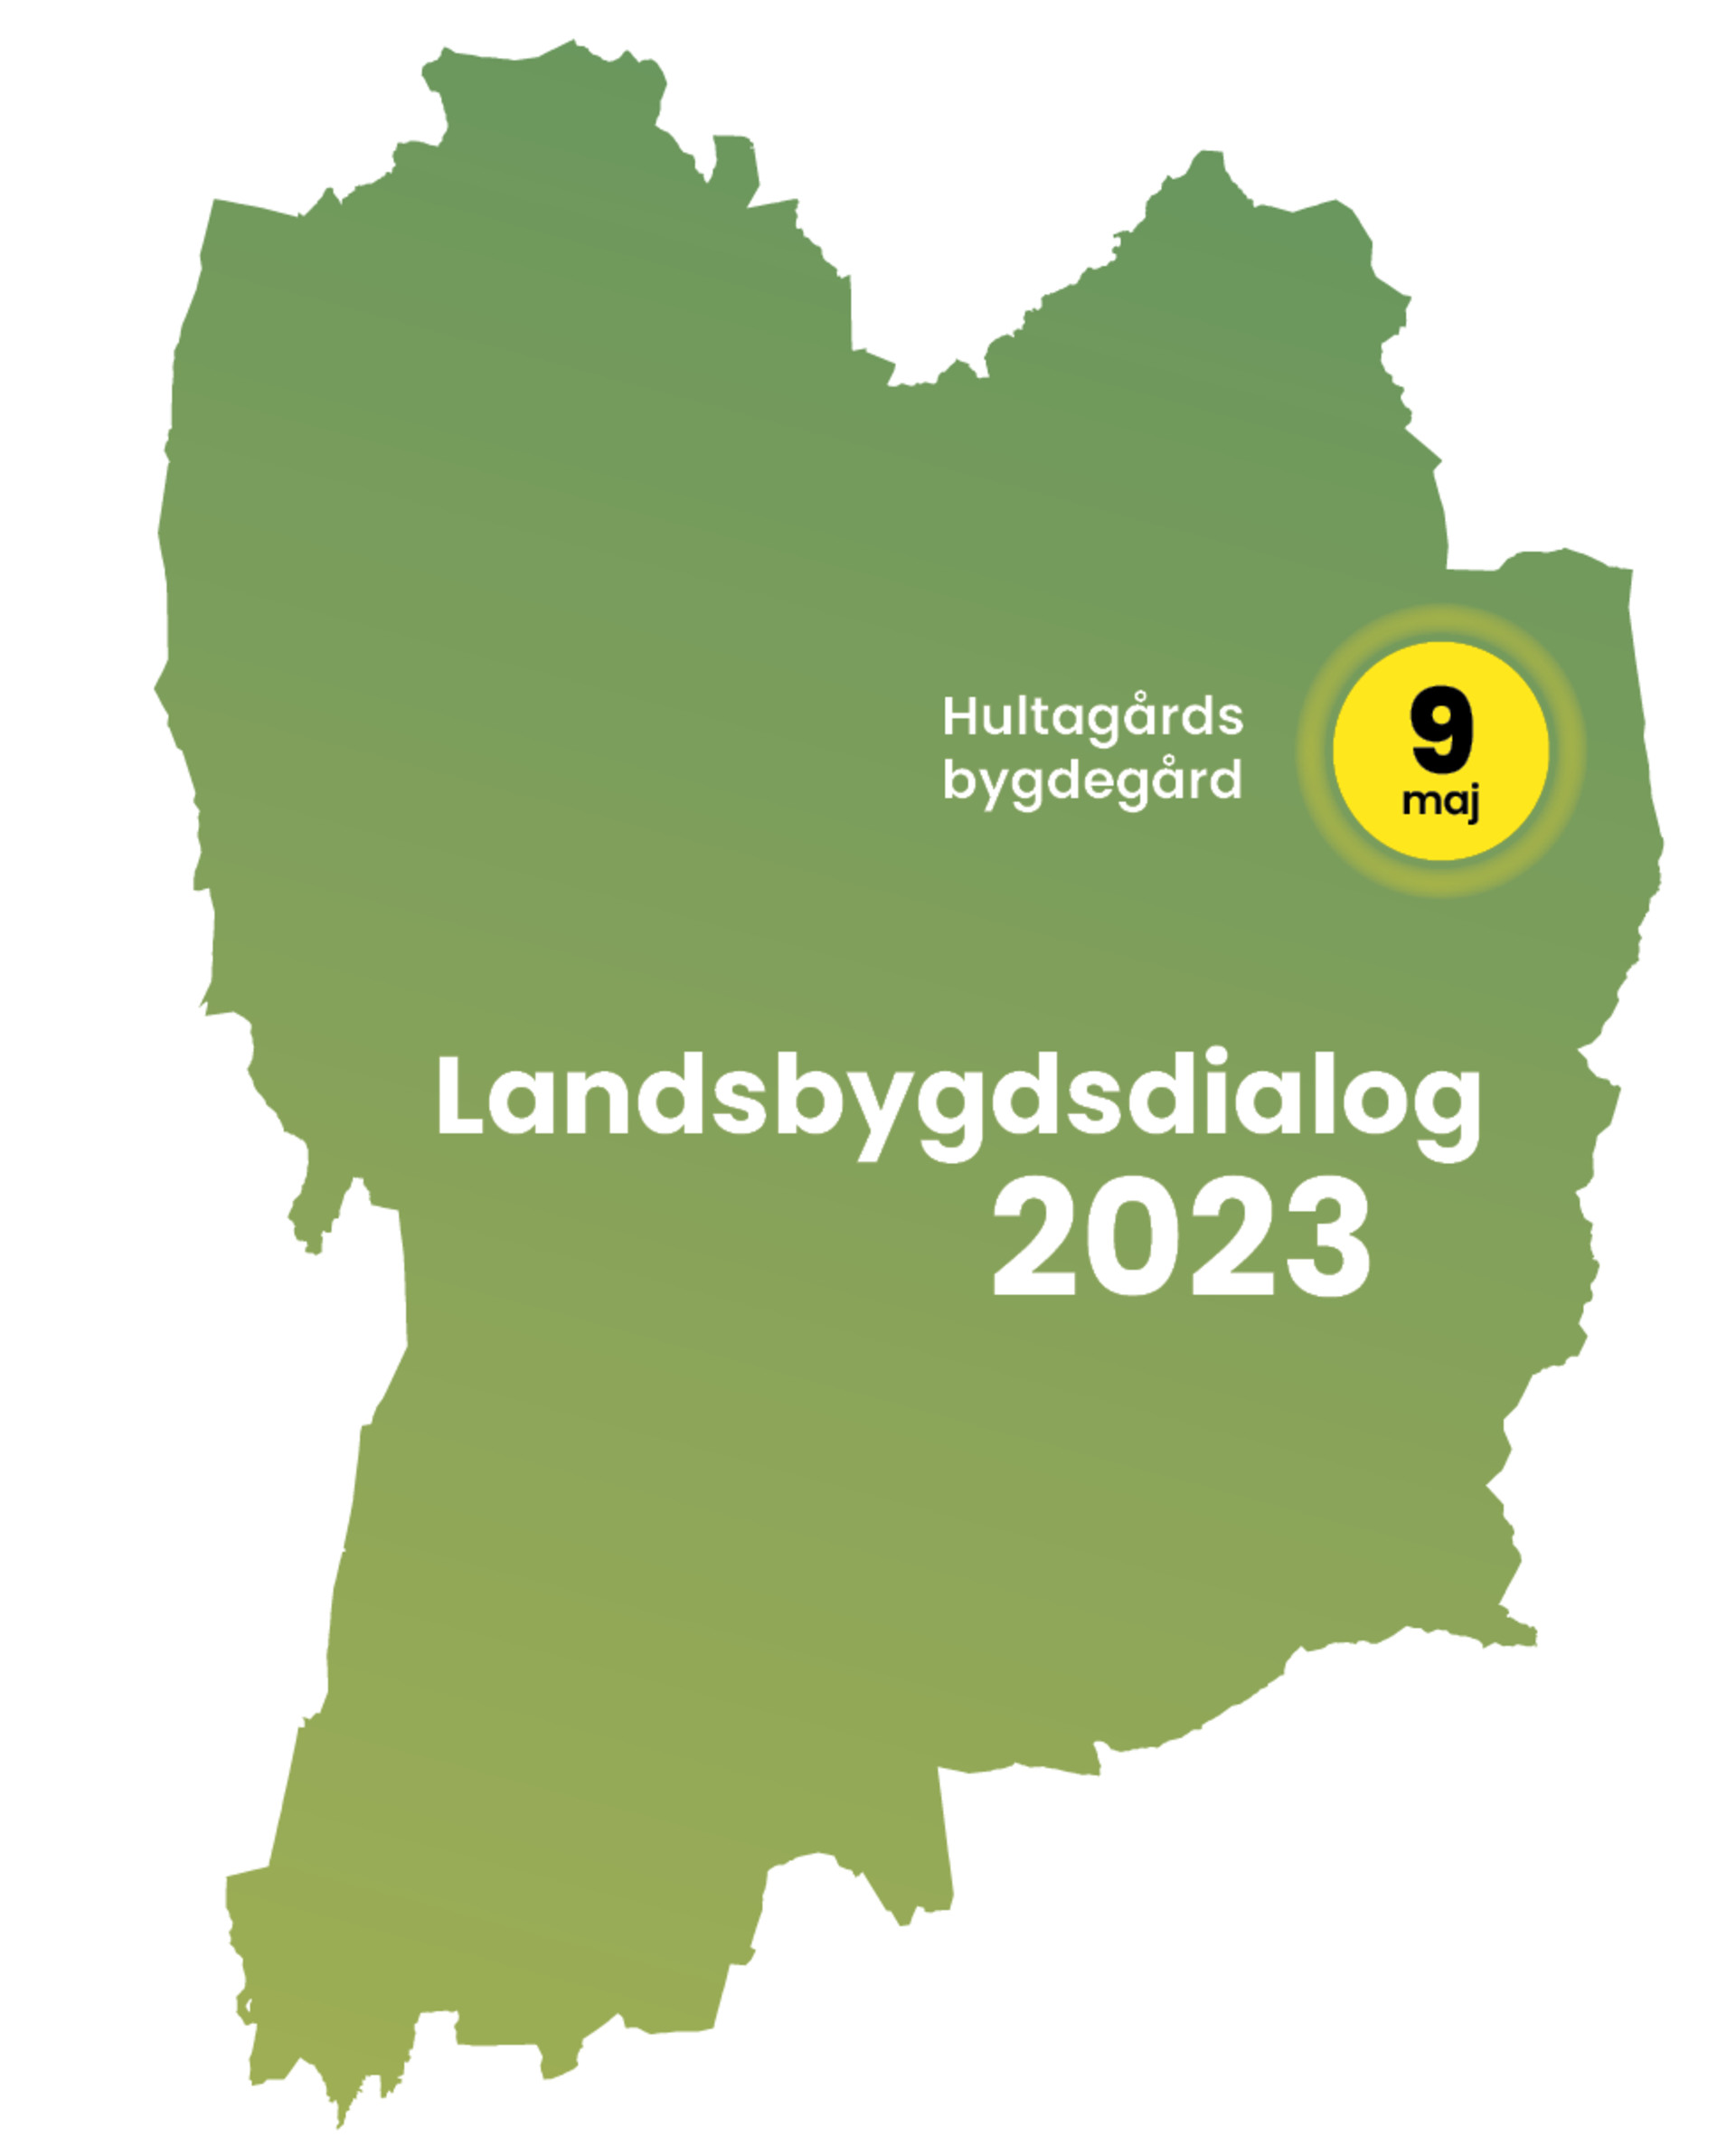 Grön karta över Sävsjö kommun med gul markering för Hultagård och texten Landsbygdsdialog 2023.